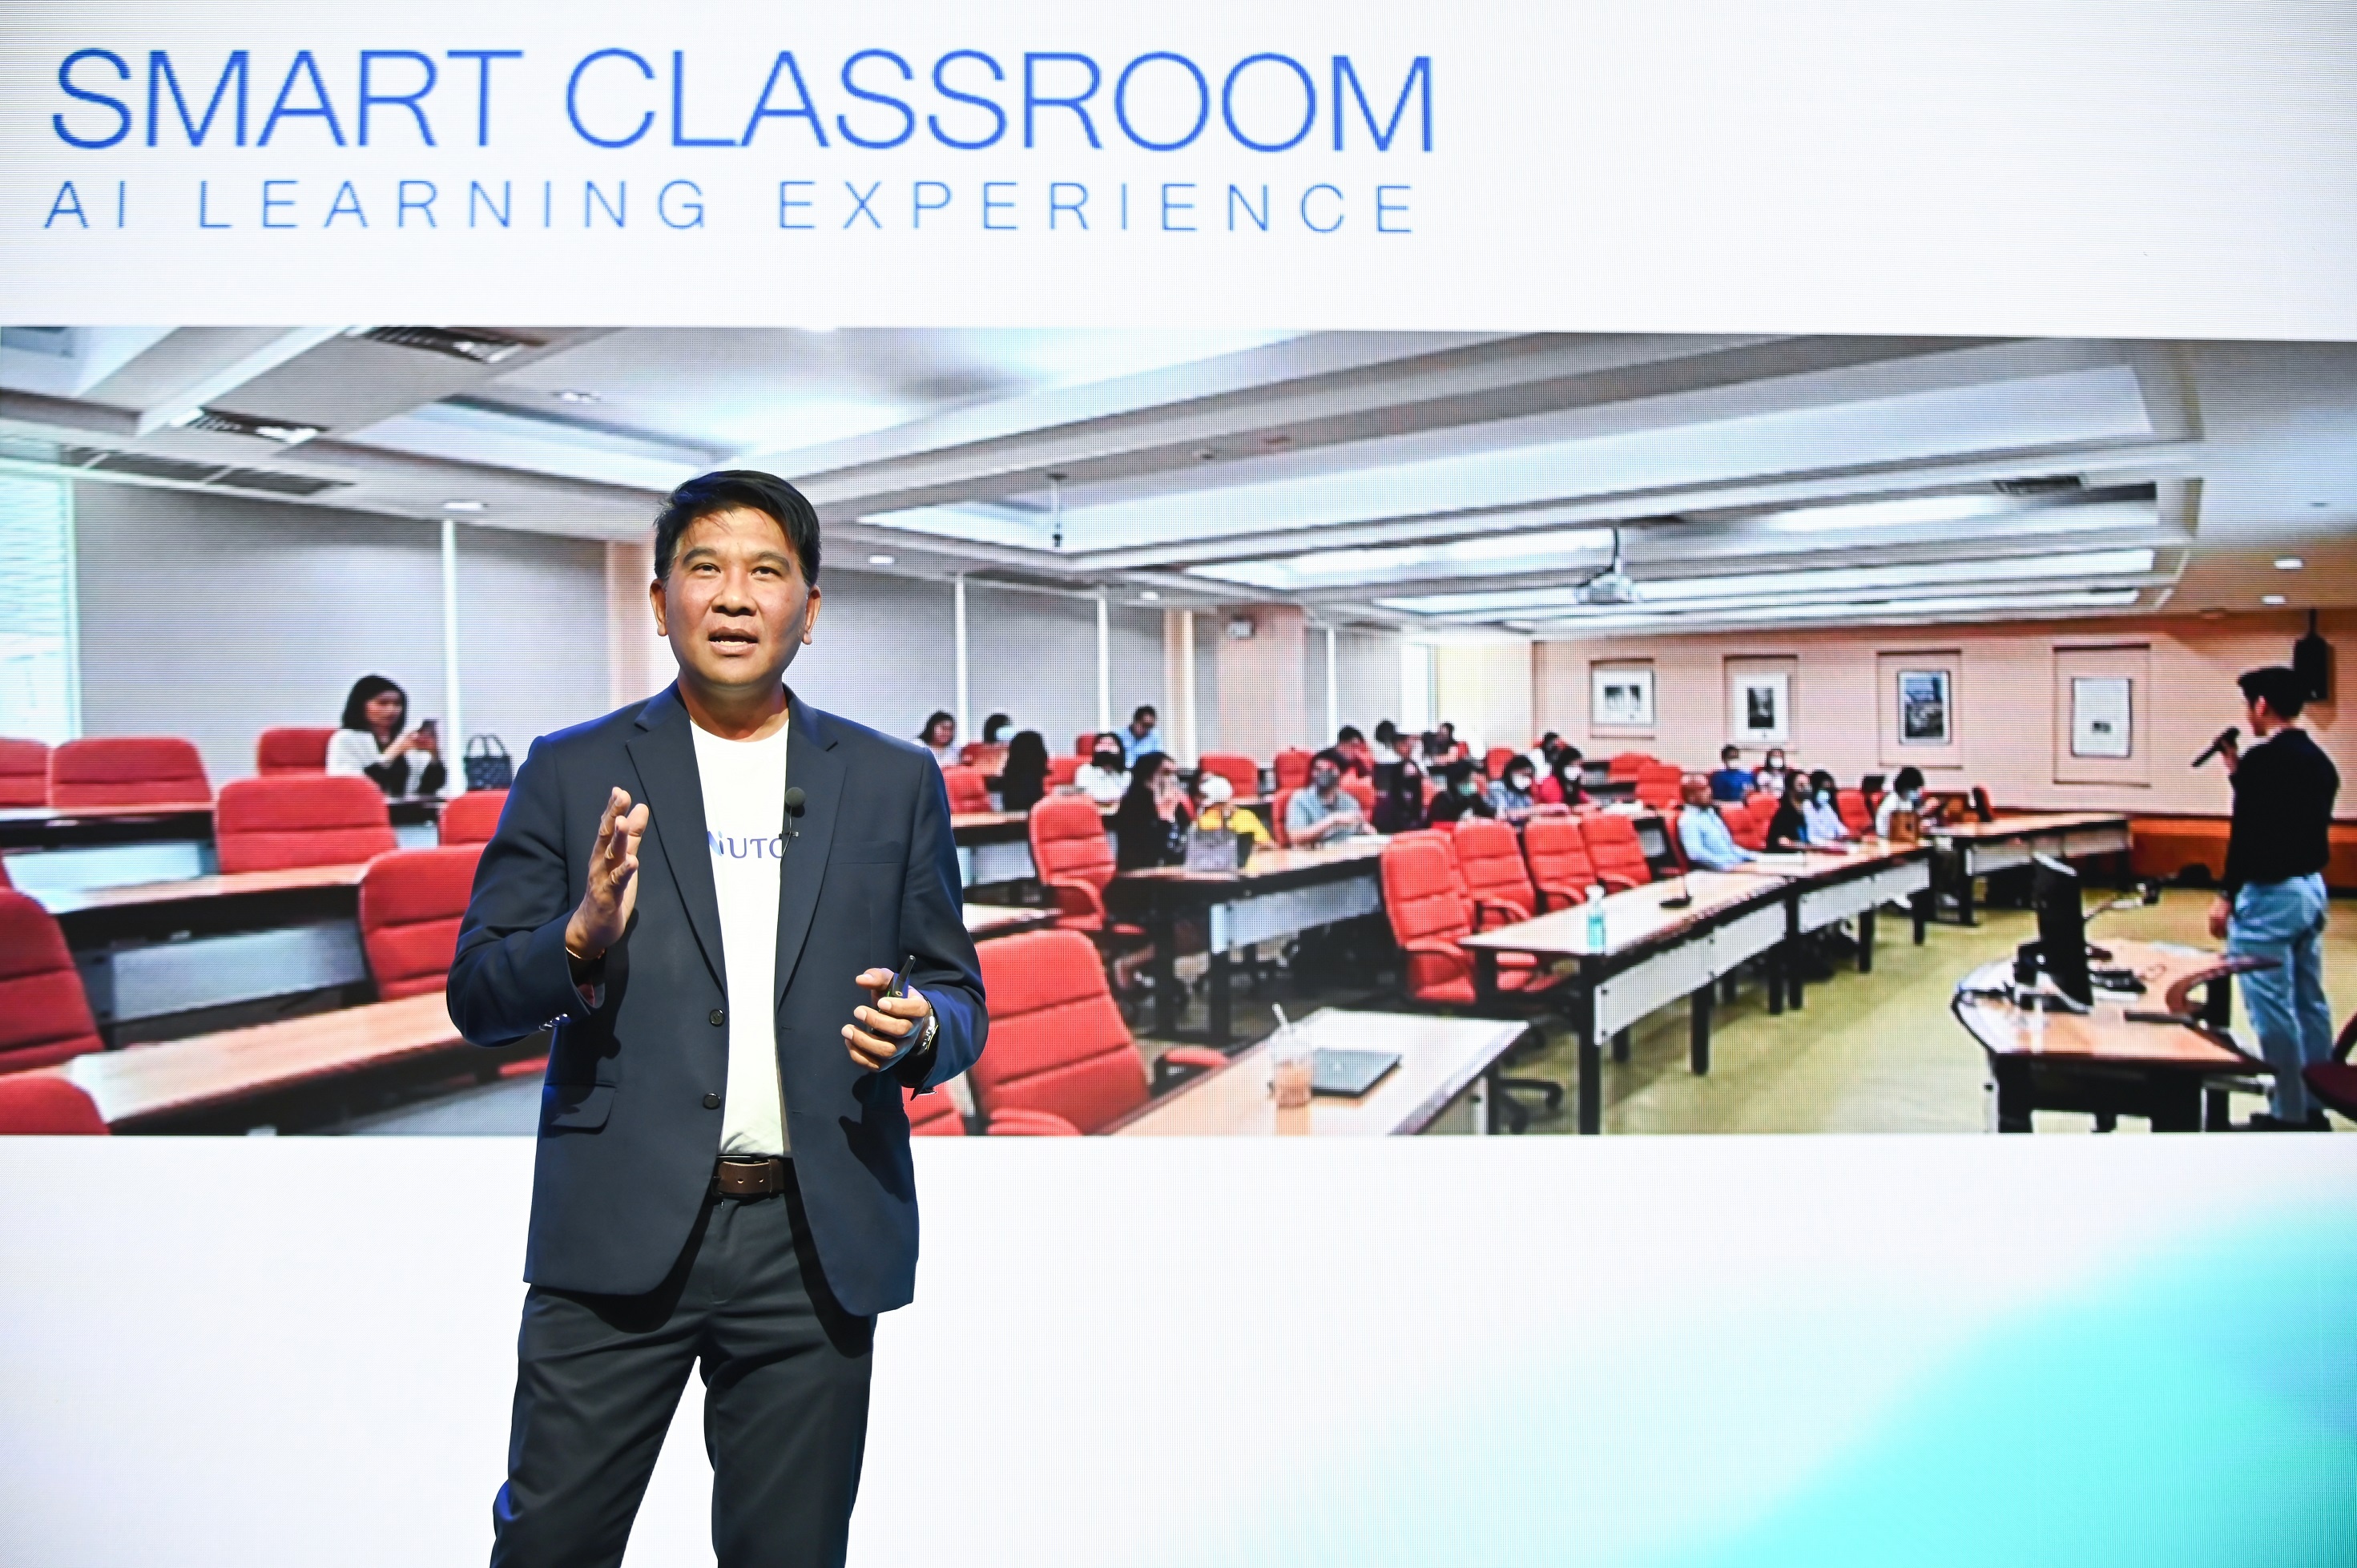 ม.หอการค้าไทย จับมือ หัวเว่ย เตรียมพร้อมติดตั้ง Wifi 7 แห่งแรกในเอเชียแปซิฟิก เดินหน้าขับเคลื่อน AI UTCC พัฒนาทักษะการเรียนรู้ของนักศึกษาในยุคดิจิทัล